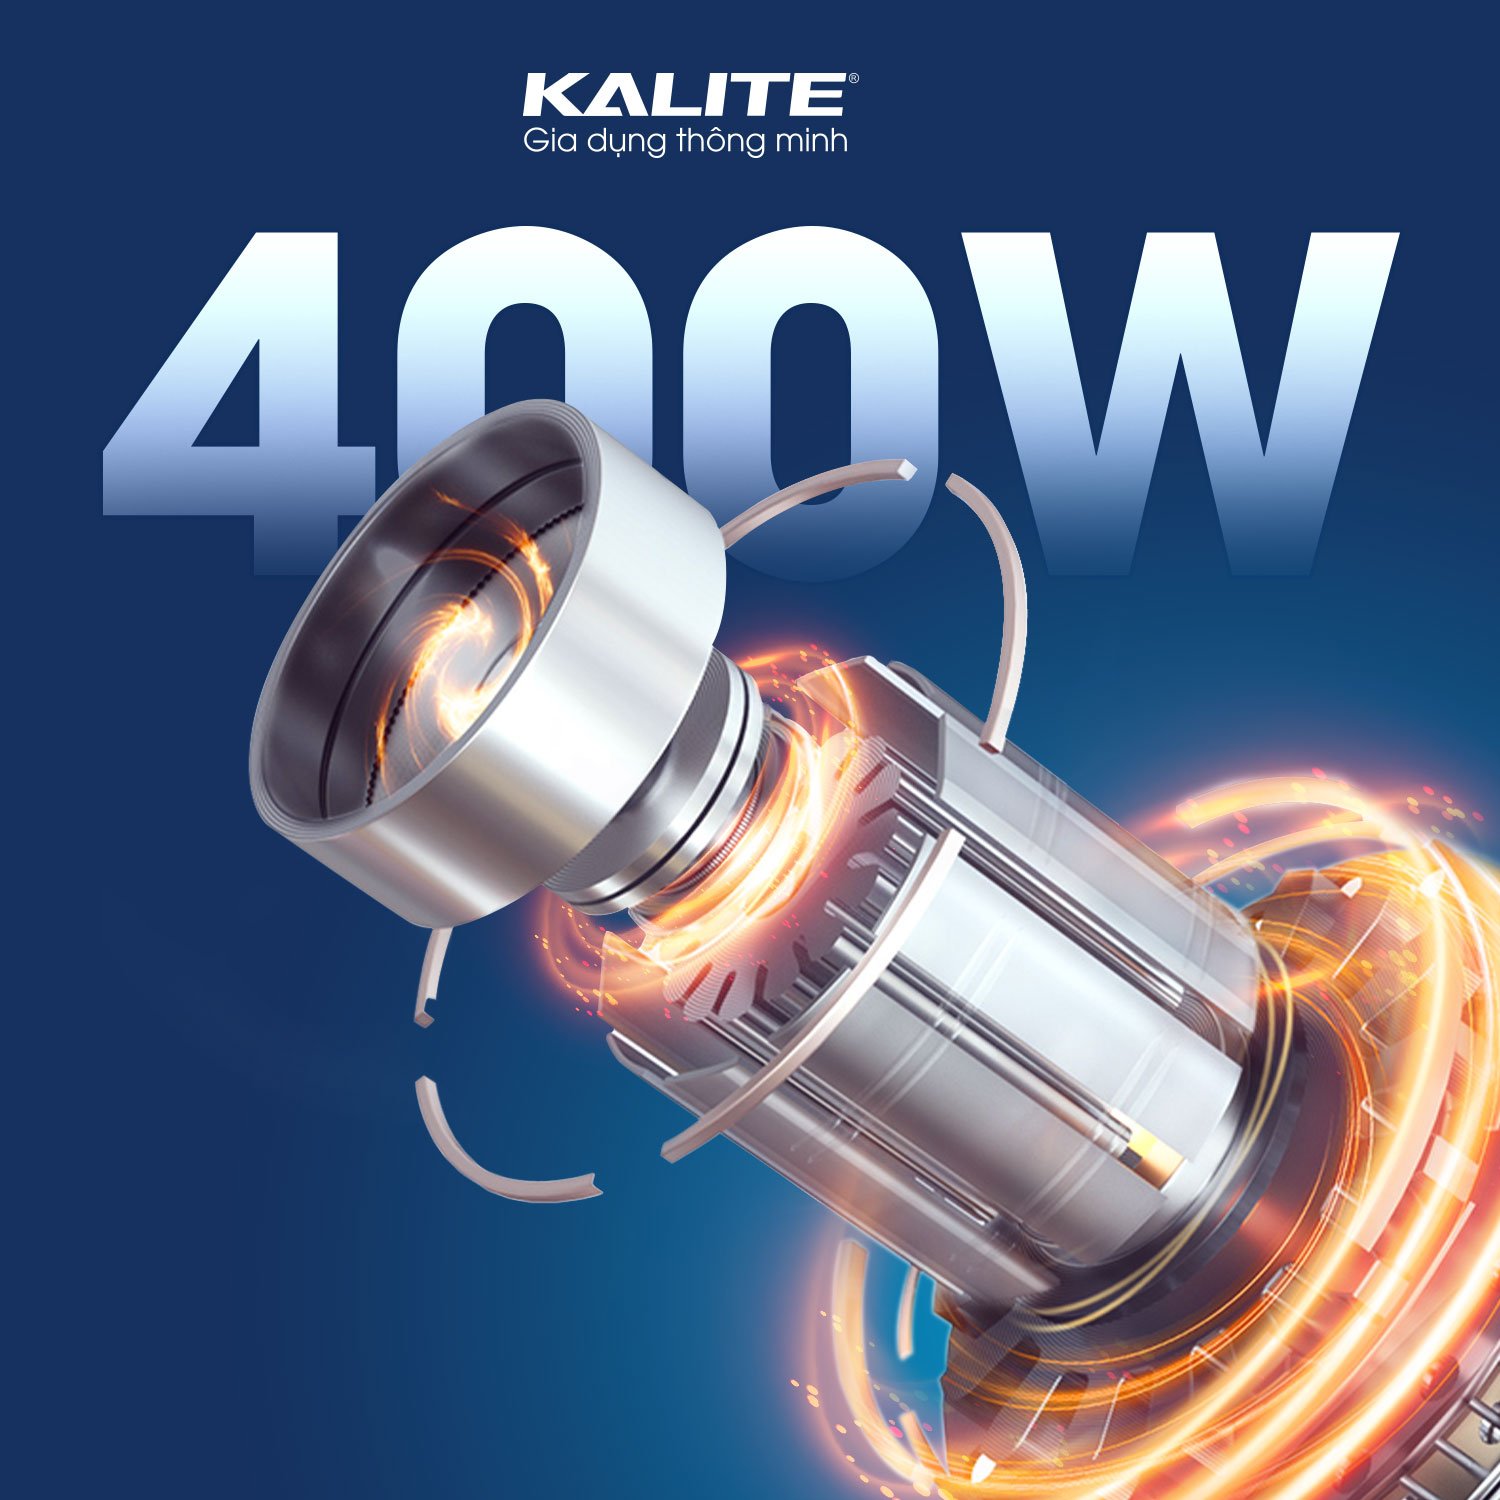 Máy xay cầm tay đa năng Kalite KEB 4111, công suất 400W, lưỡi dao bằng thép không gỉ, 12 cấp tốc độ và 1 cấp tăng cường giúp xay thực phẩm nhanh chóng, hàng chính hãng